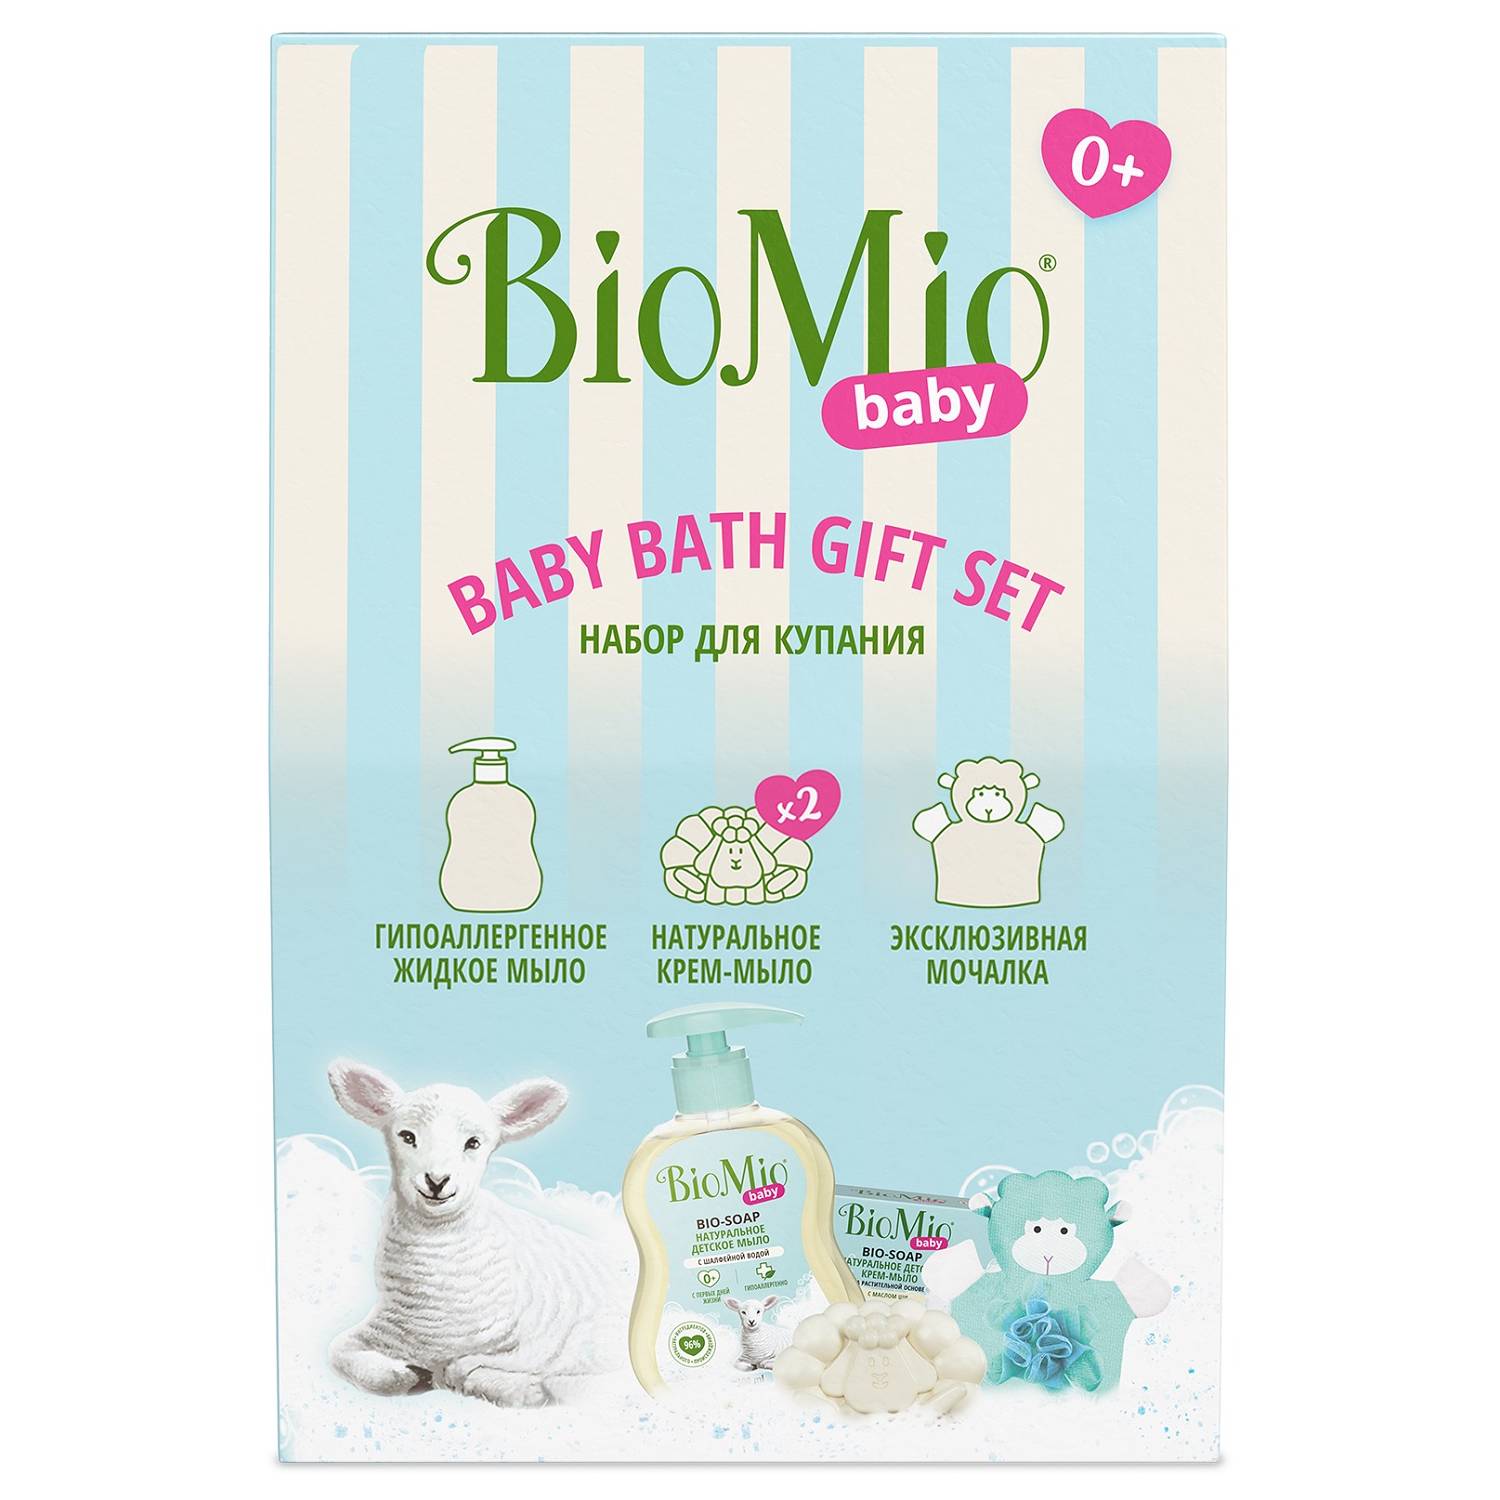 BioMio Детский набор для купания Baby 0+: жидкое мыло 300 мл + крем-мыло 90 г + мочалка (BioMio, Мыло) цена и фото